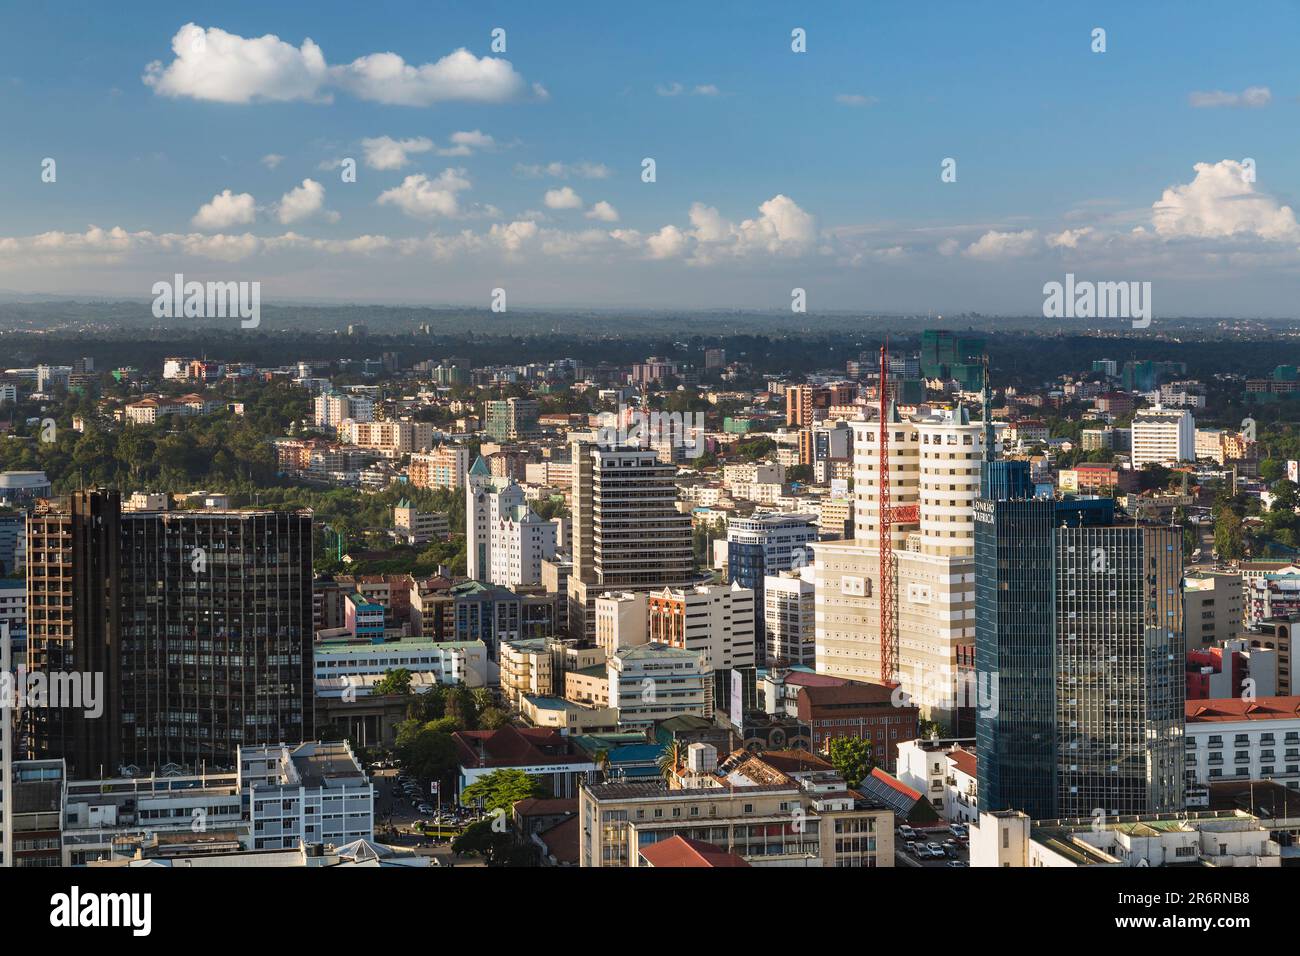 Nairobi, Kenya - 23 décembre : immeubles modernes dans le quartier des affaires de Nairobi, Kenya sur 23 décembre 2015 Banque D'Images